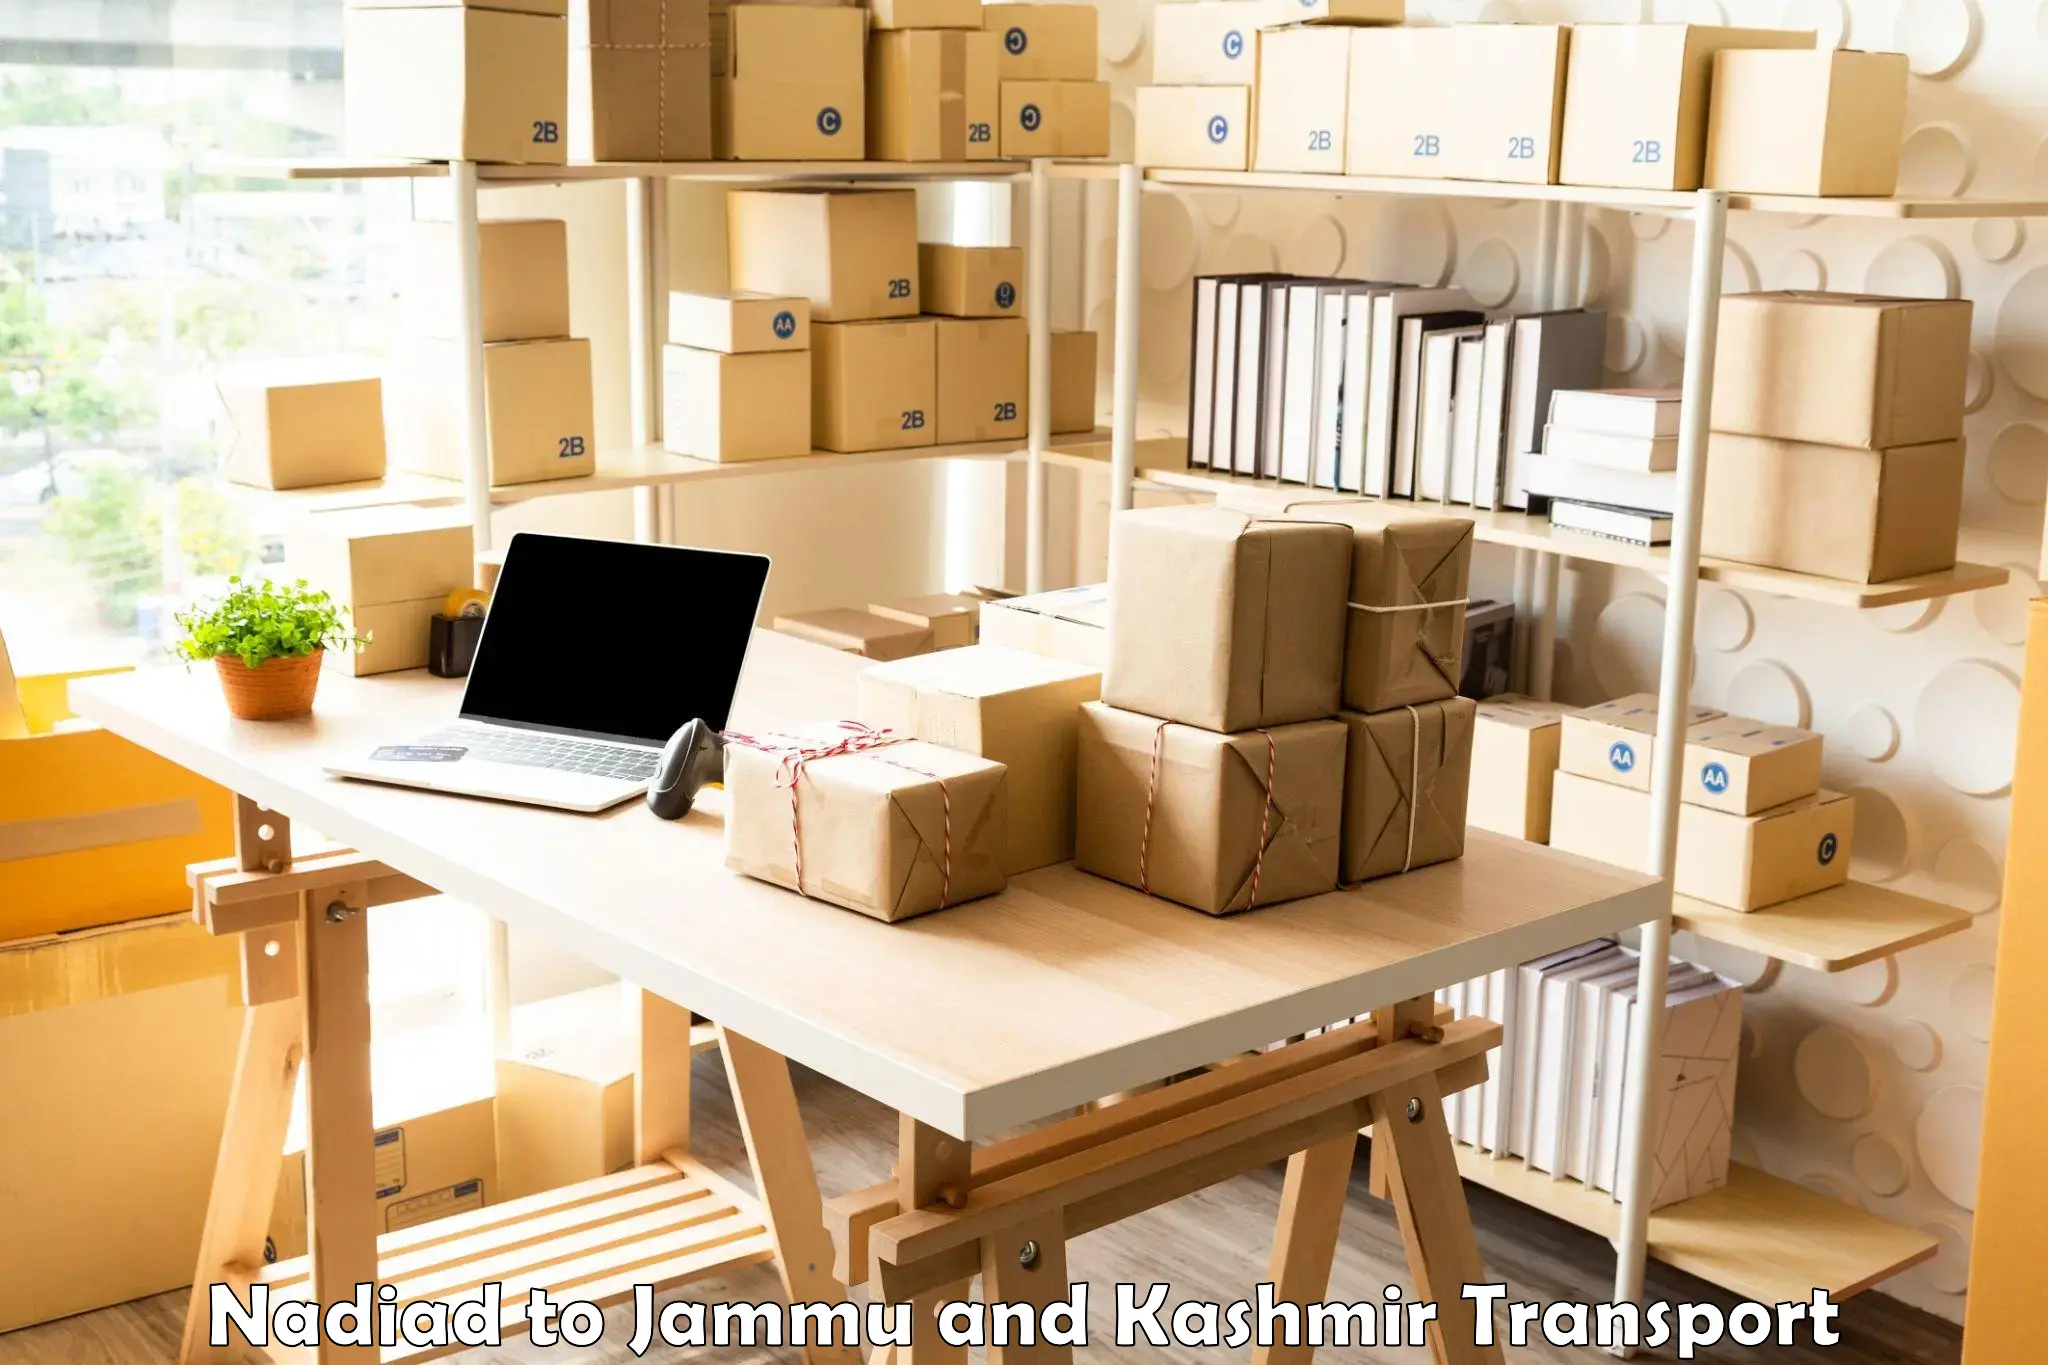 Cargo transportation services Nadiad to University of Kashmir Srinagar